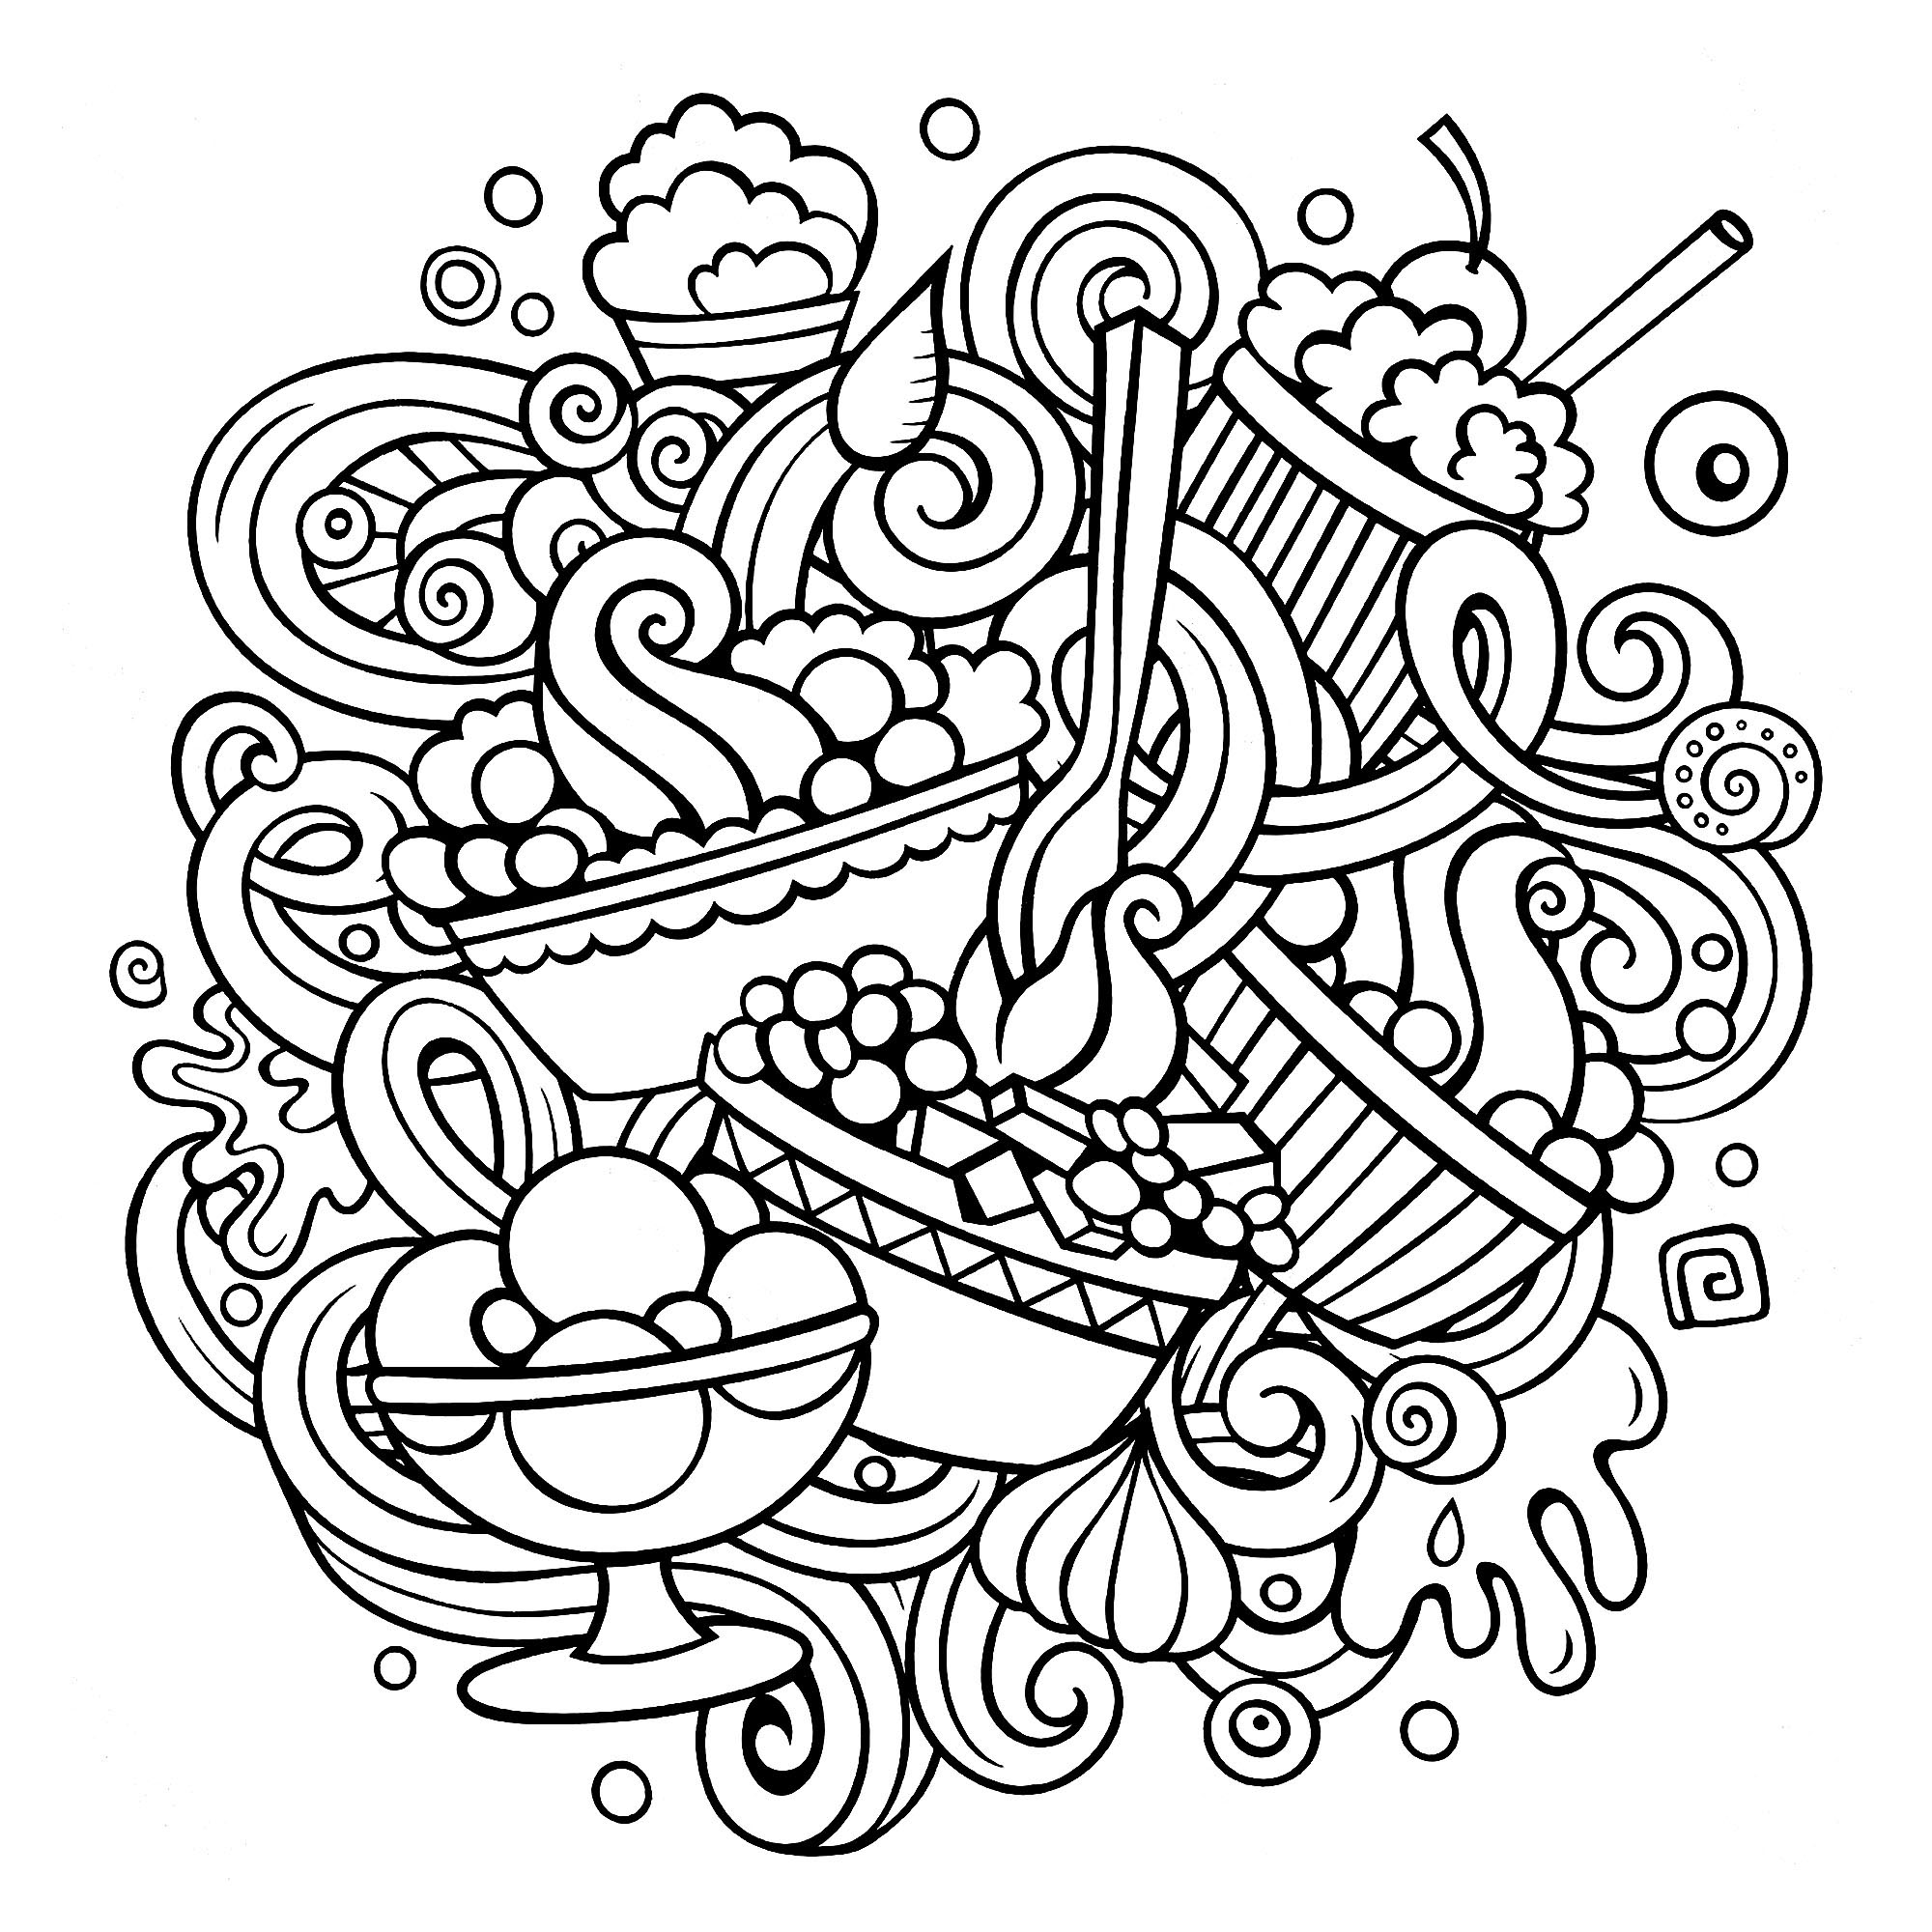 Un dibujo estilo Doodle con un montón de pasteles de aspecto delicioso